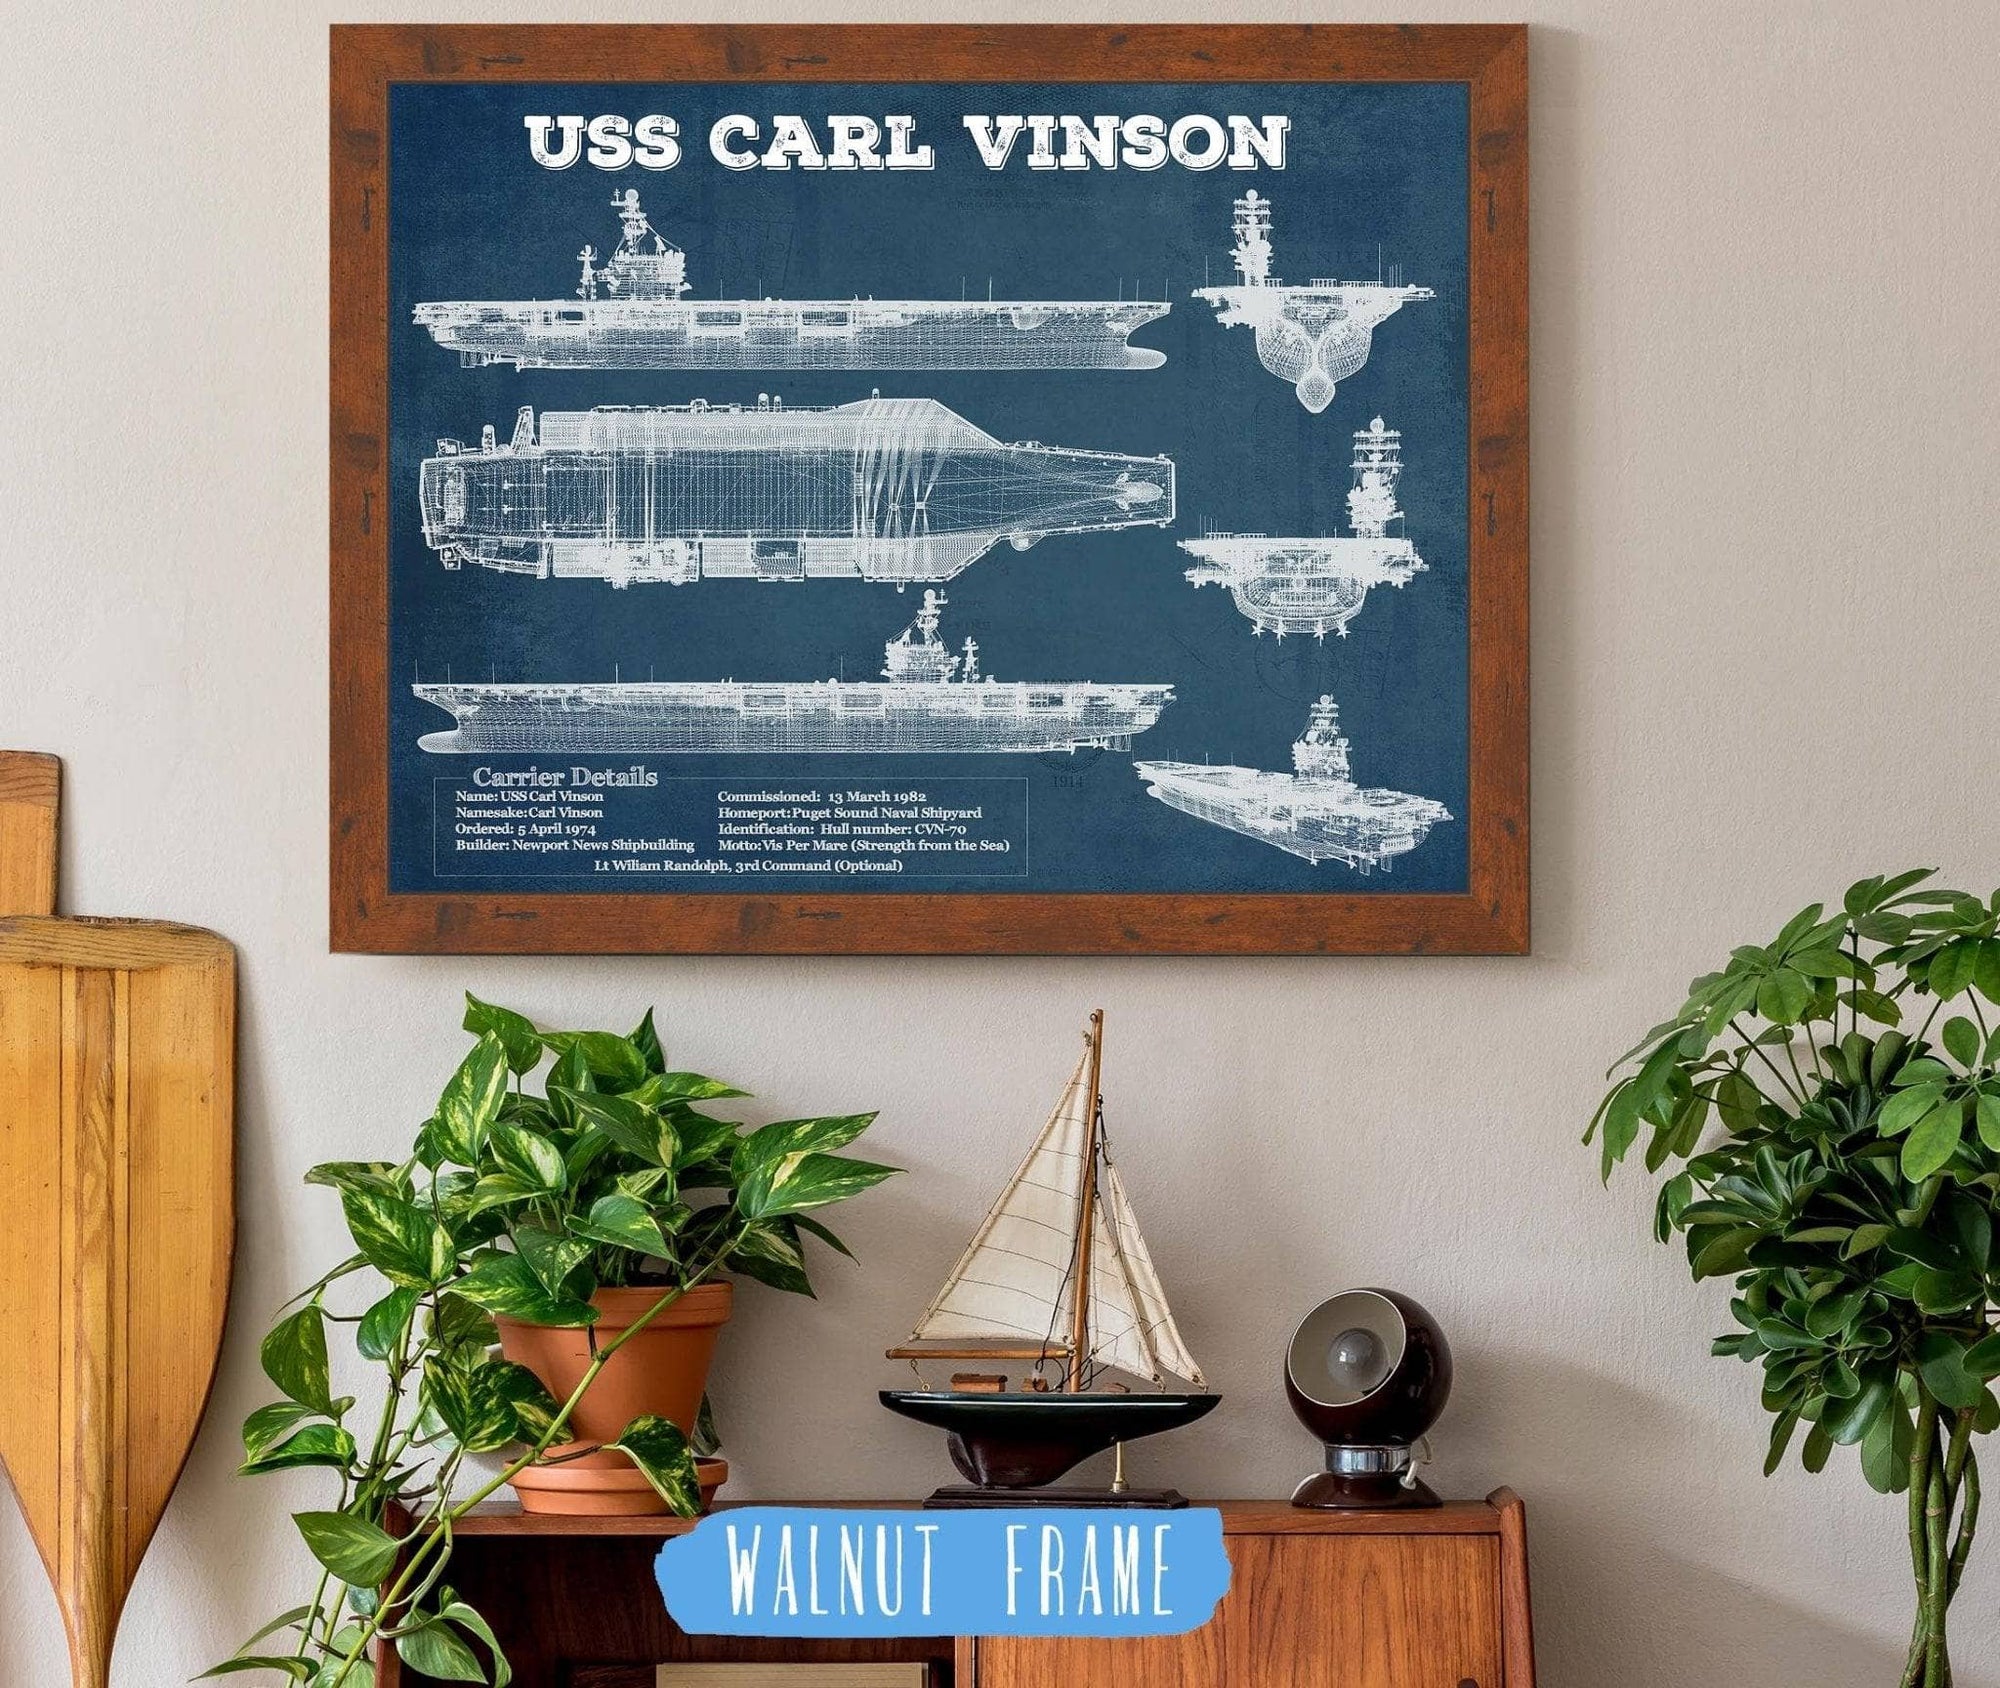 Cutler West Best Selling Collection 14" x 11" / Walnut Frame USS Carl Vinson (CVN 70) Aircraft Carrier Blueprint Original Military Wall Art - Customizable 835000058-TOP